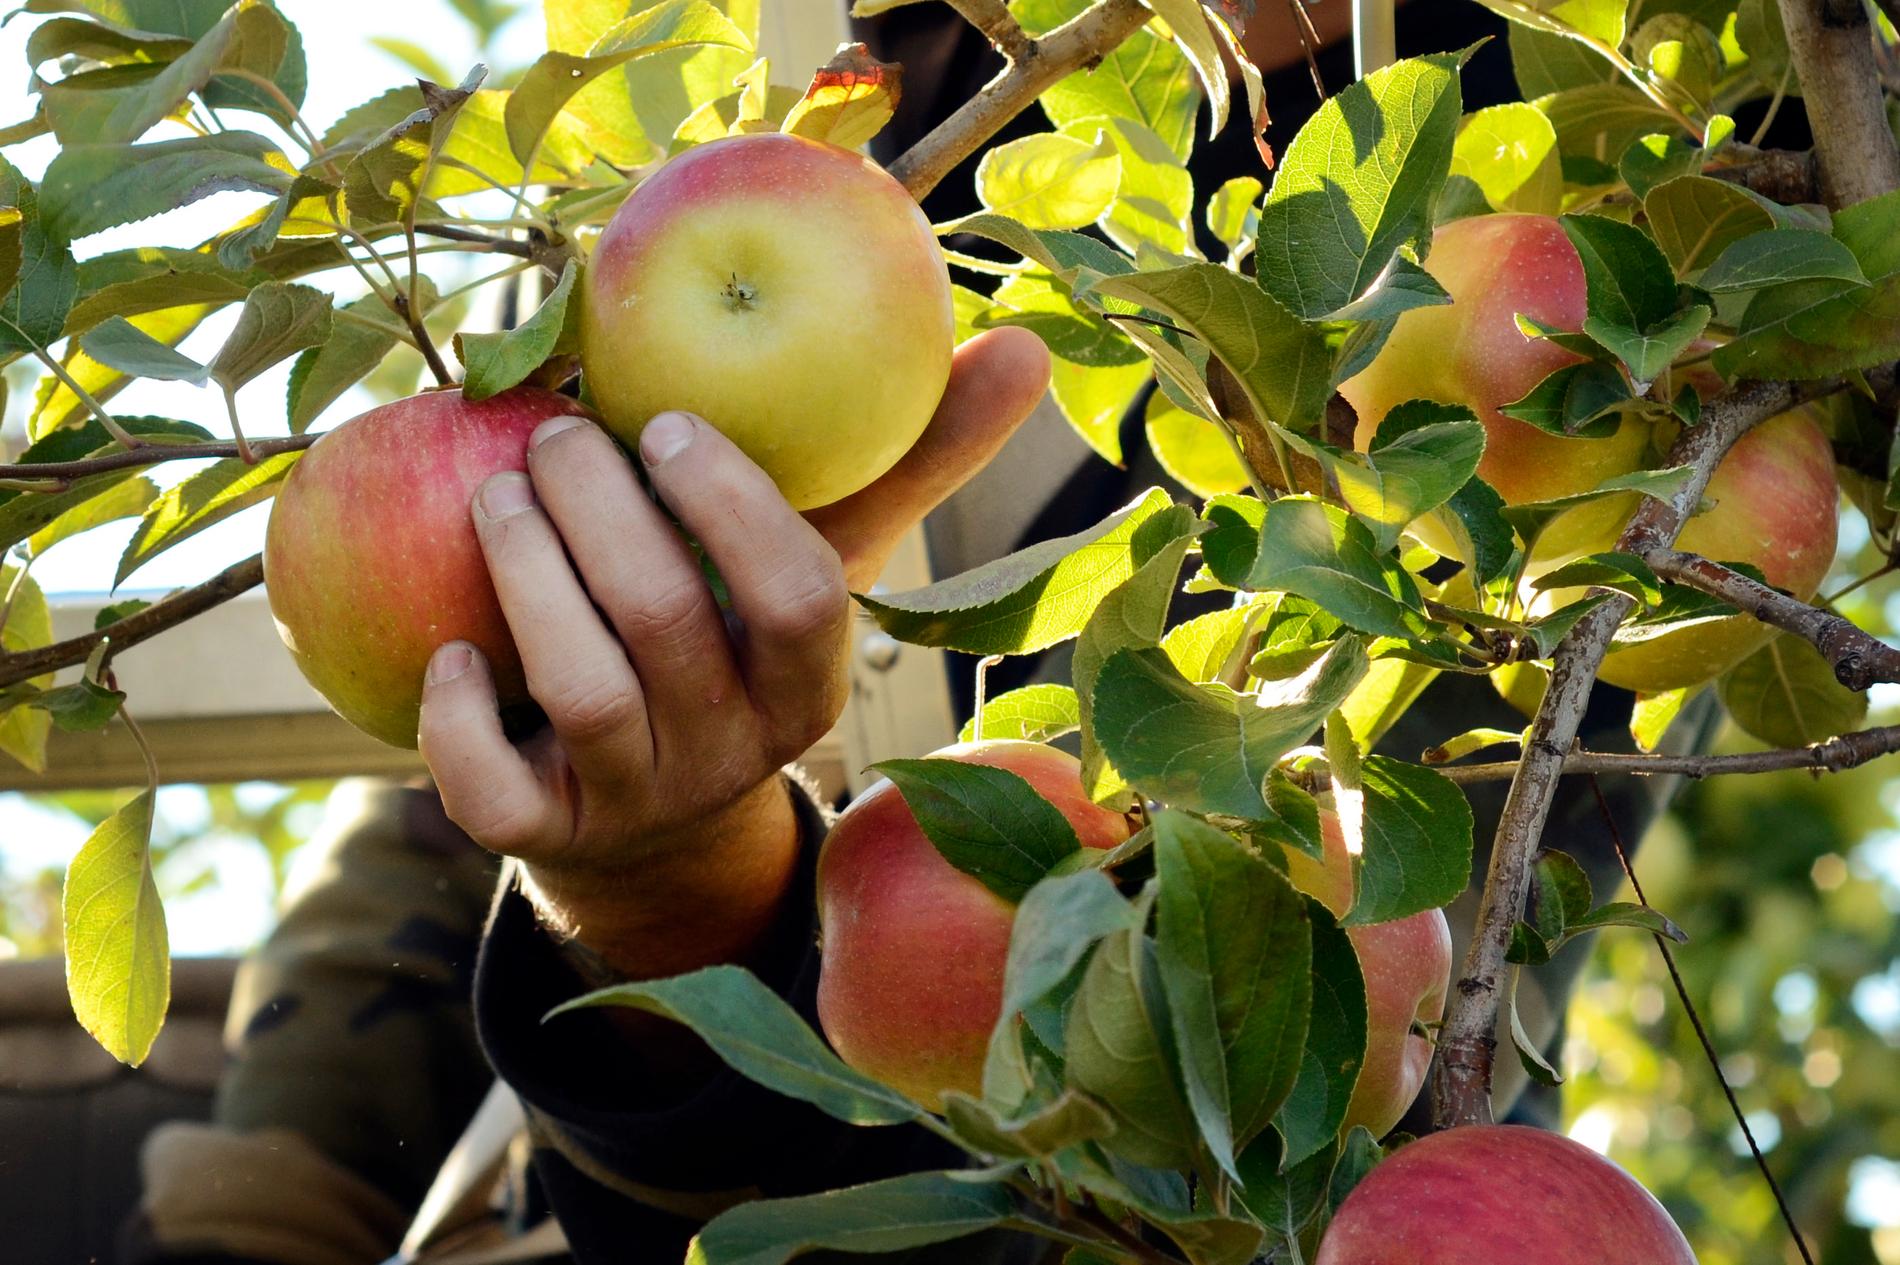 OBS: Äpplena på bilden plockades av sin rättmätiga ägare.